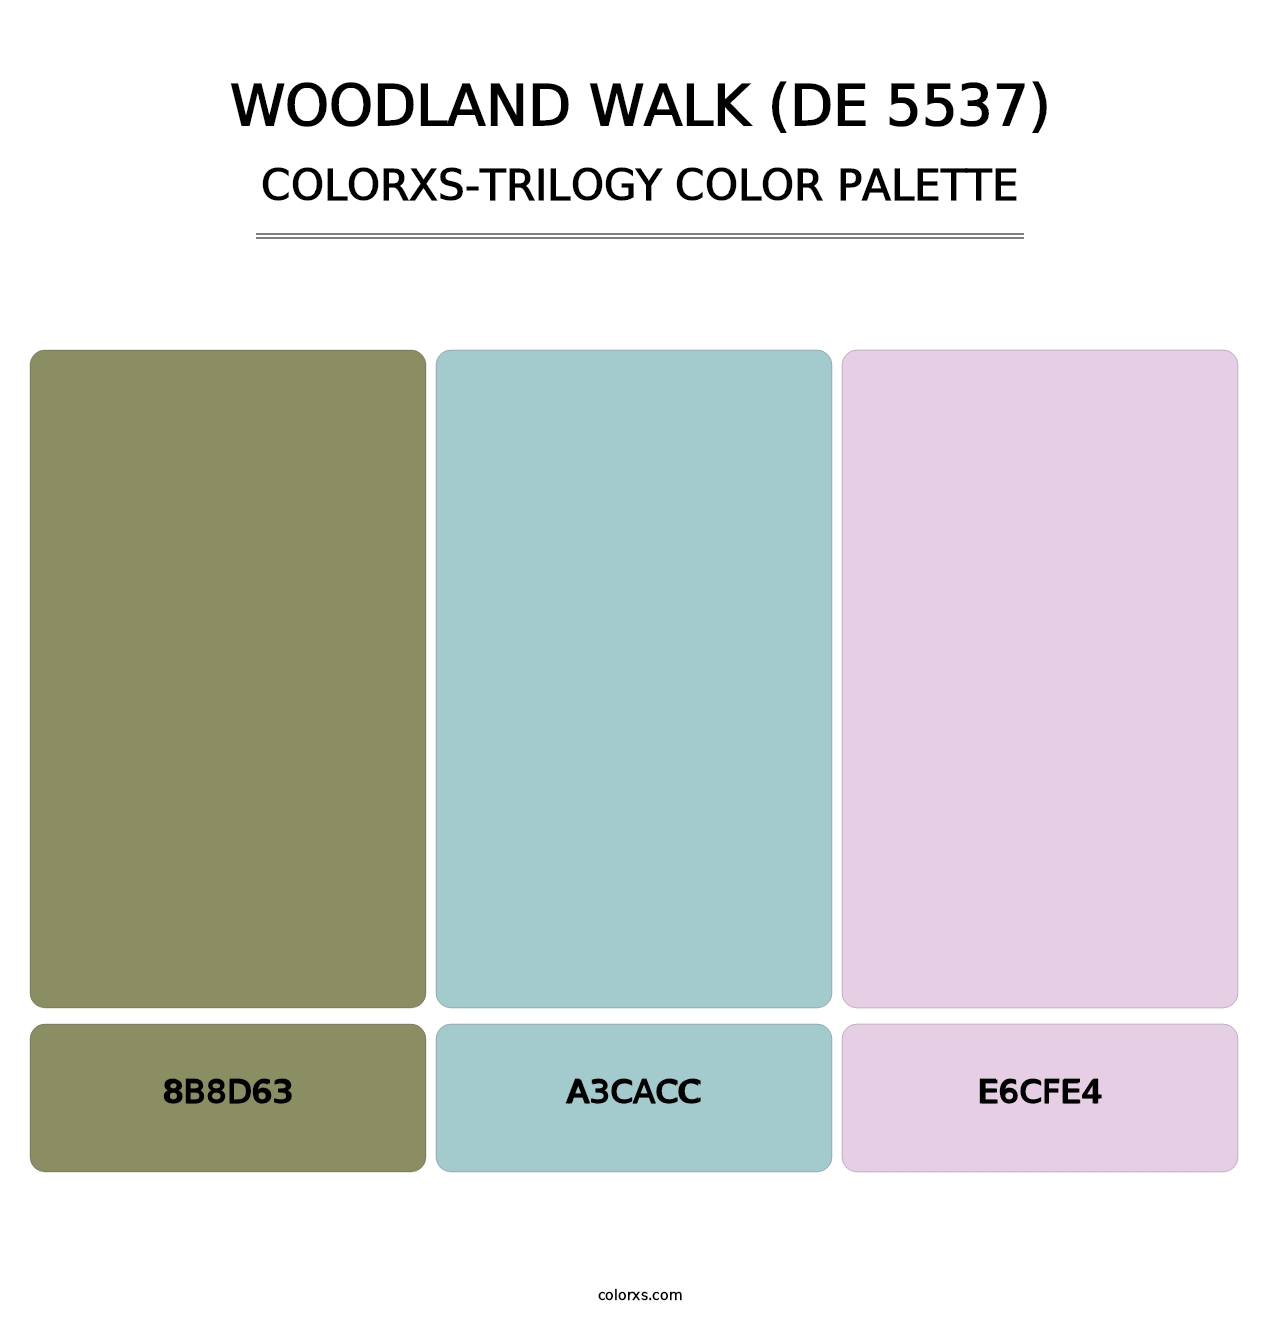 Woodland Walk (DE 5537) - Colorxs Trilogy Palette